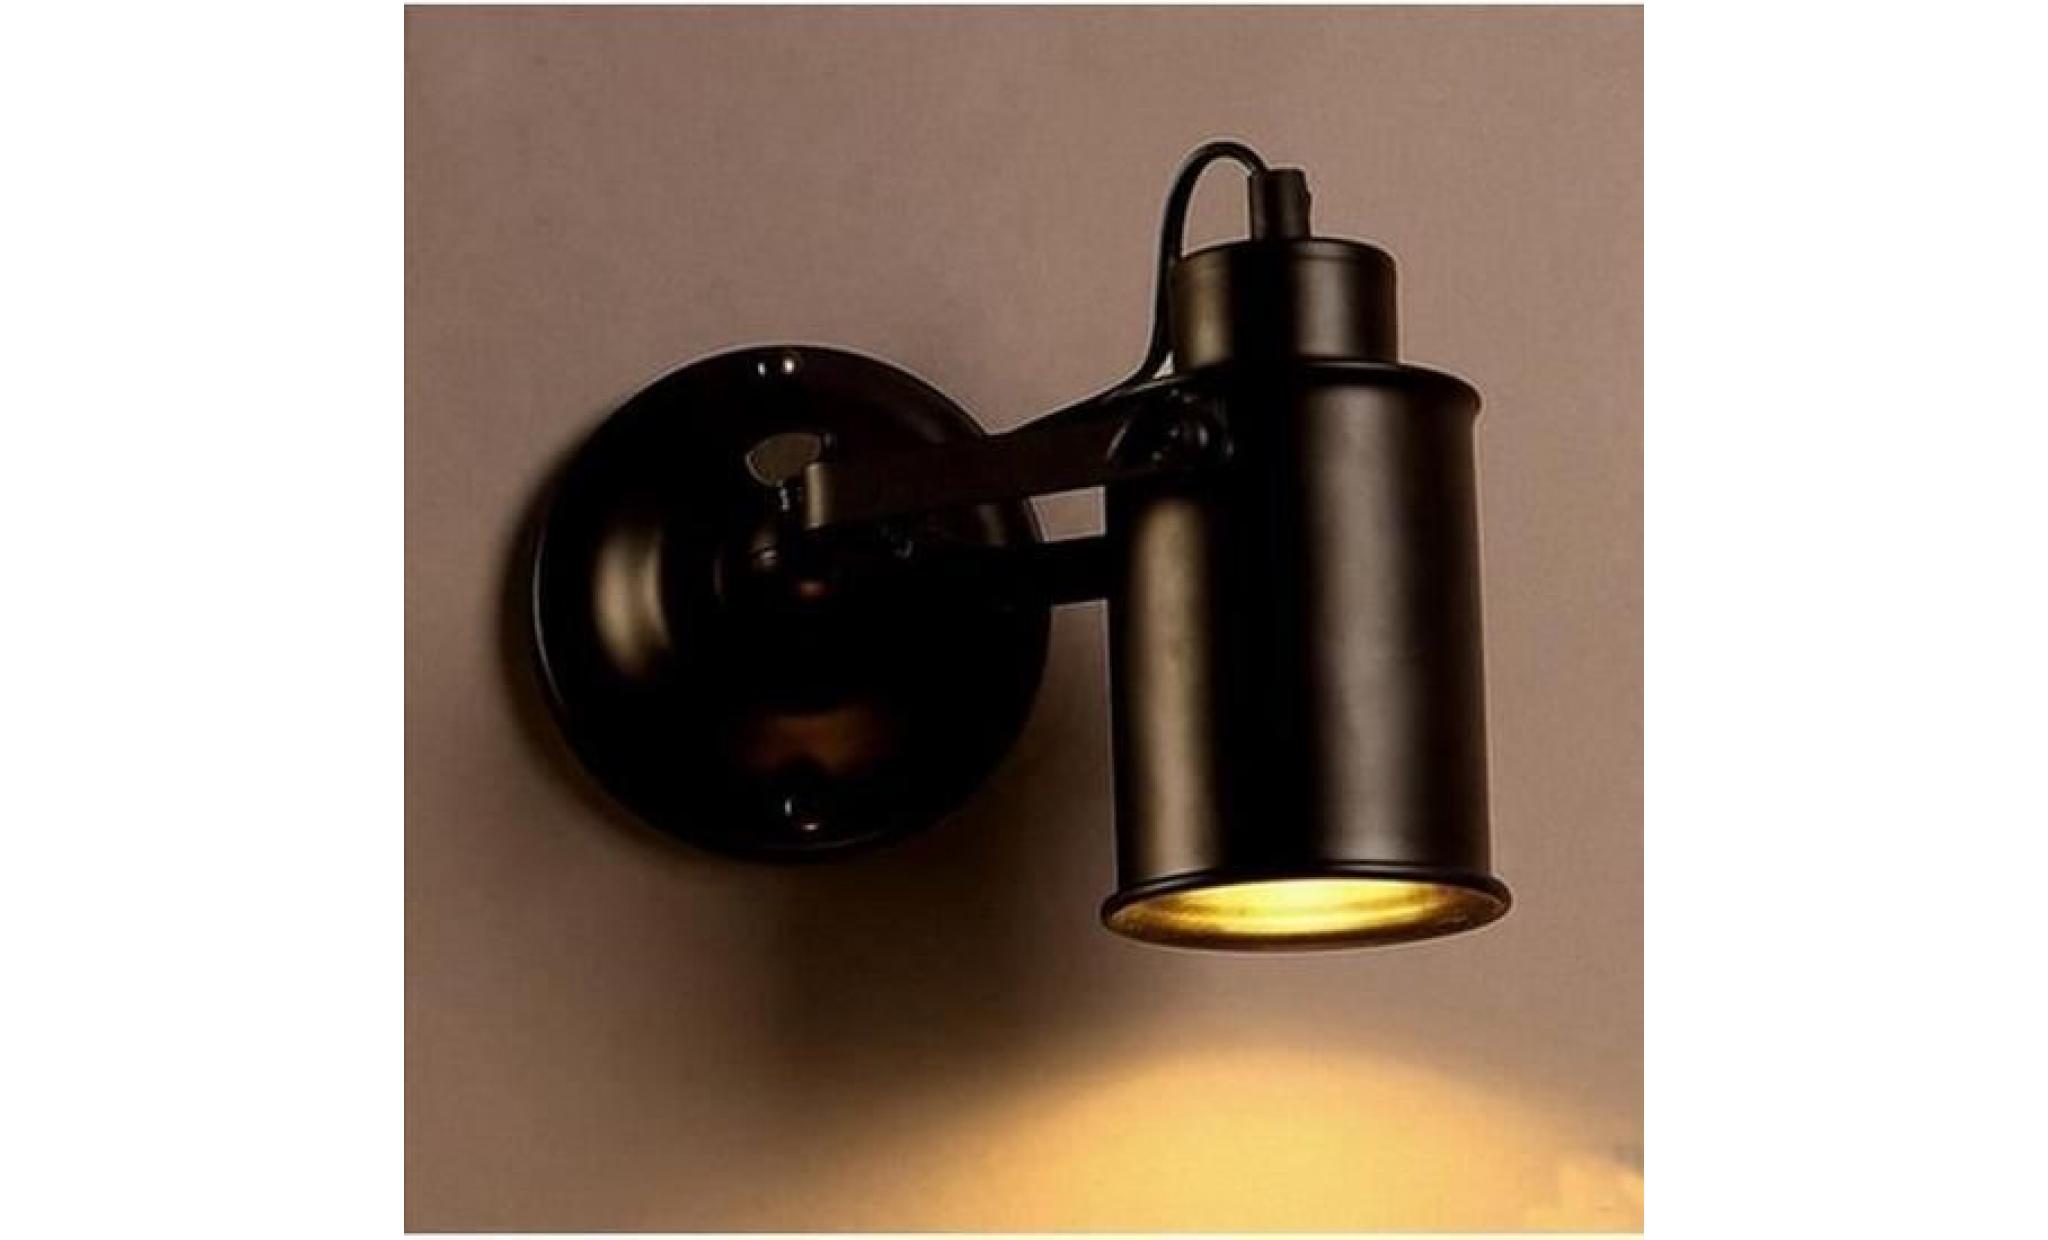 applique rétro lampe murale led industriel mur de feu lampe tête de lit ajustable pour couloir/chambre/restaurant+cadeau porte clés